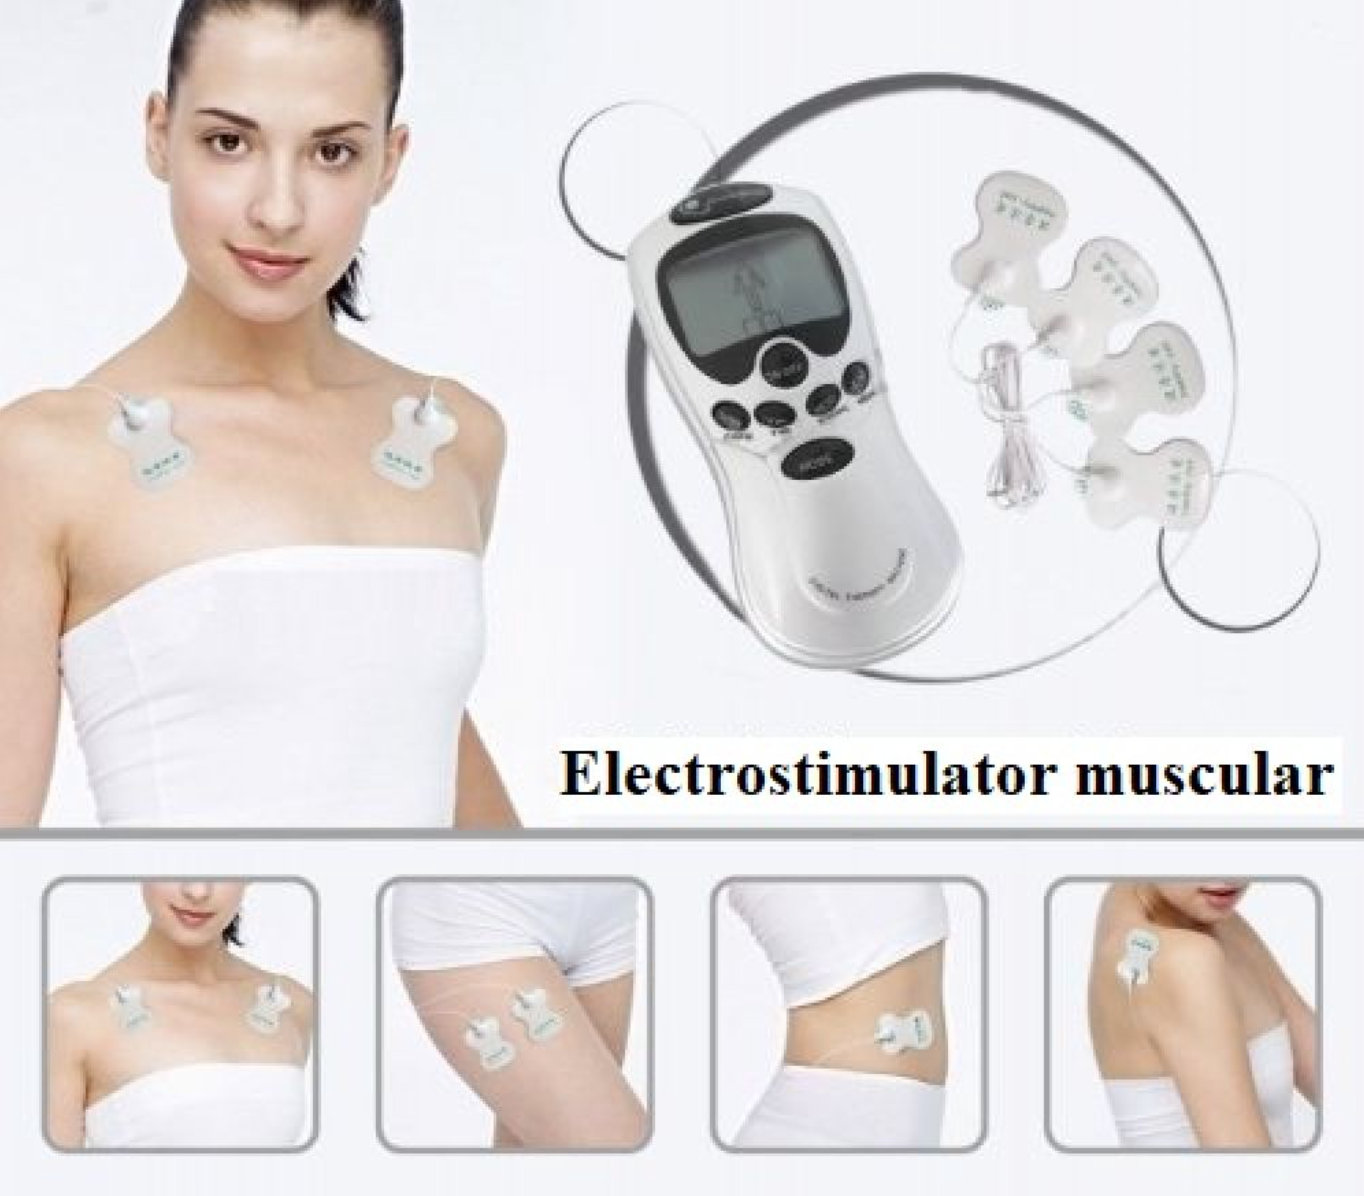 NOU: Electrostimulator muscular – aparat masaj si fizioterapie prin electrostimulare cu 4 electrozi, 8 programe, Gri